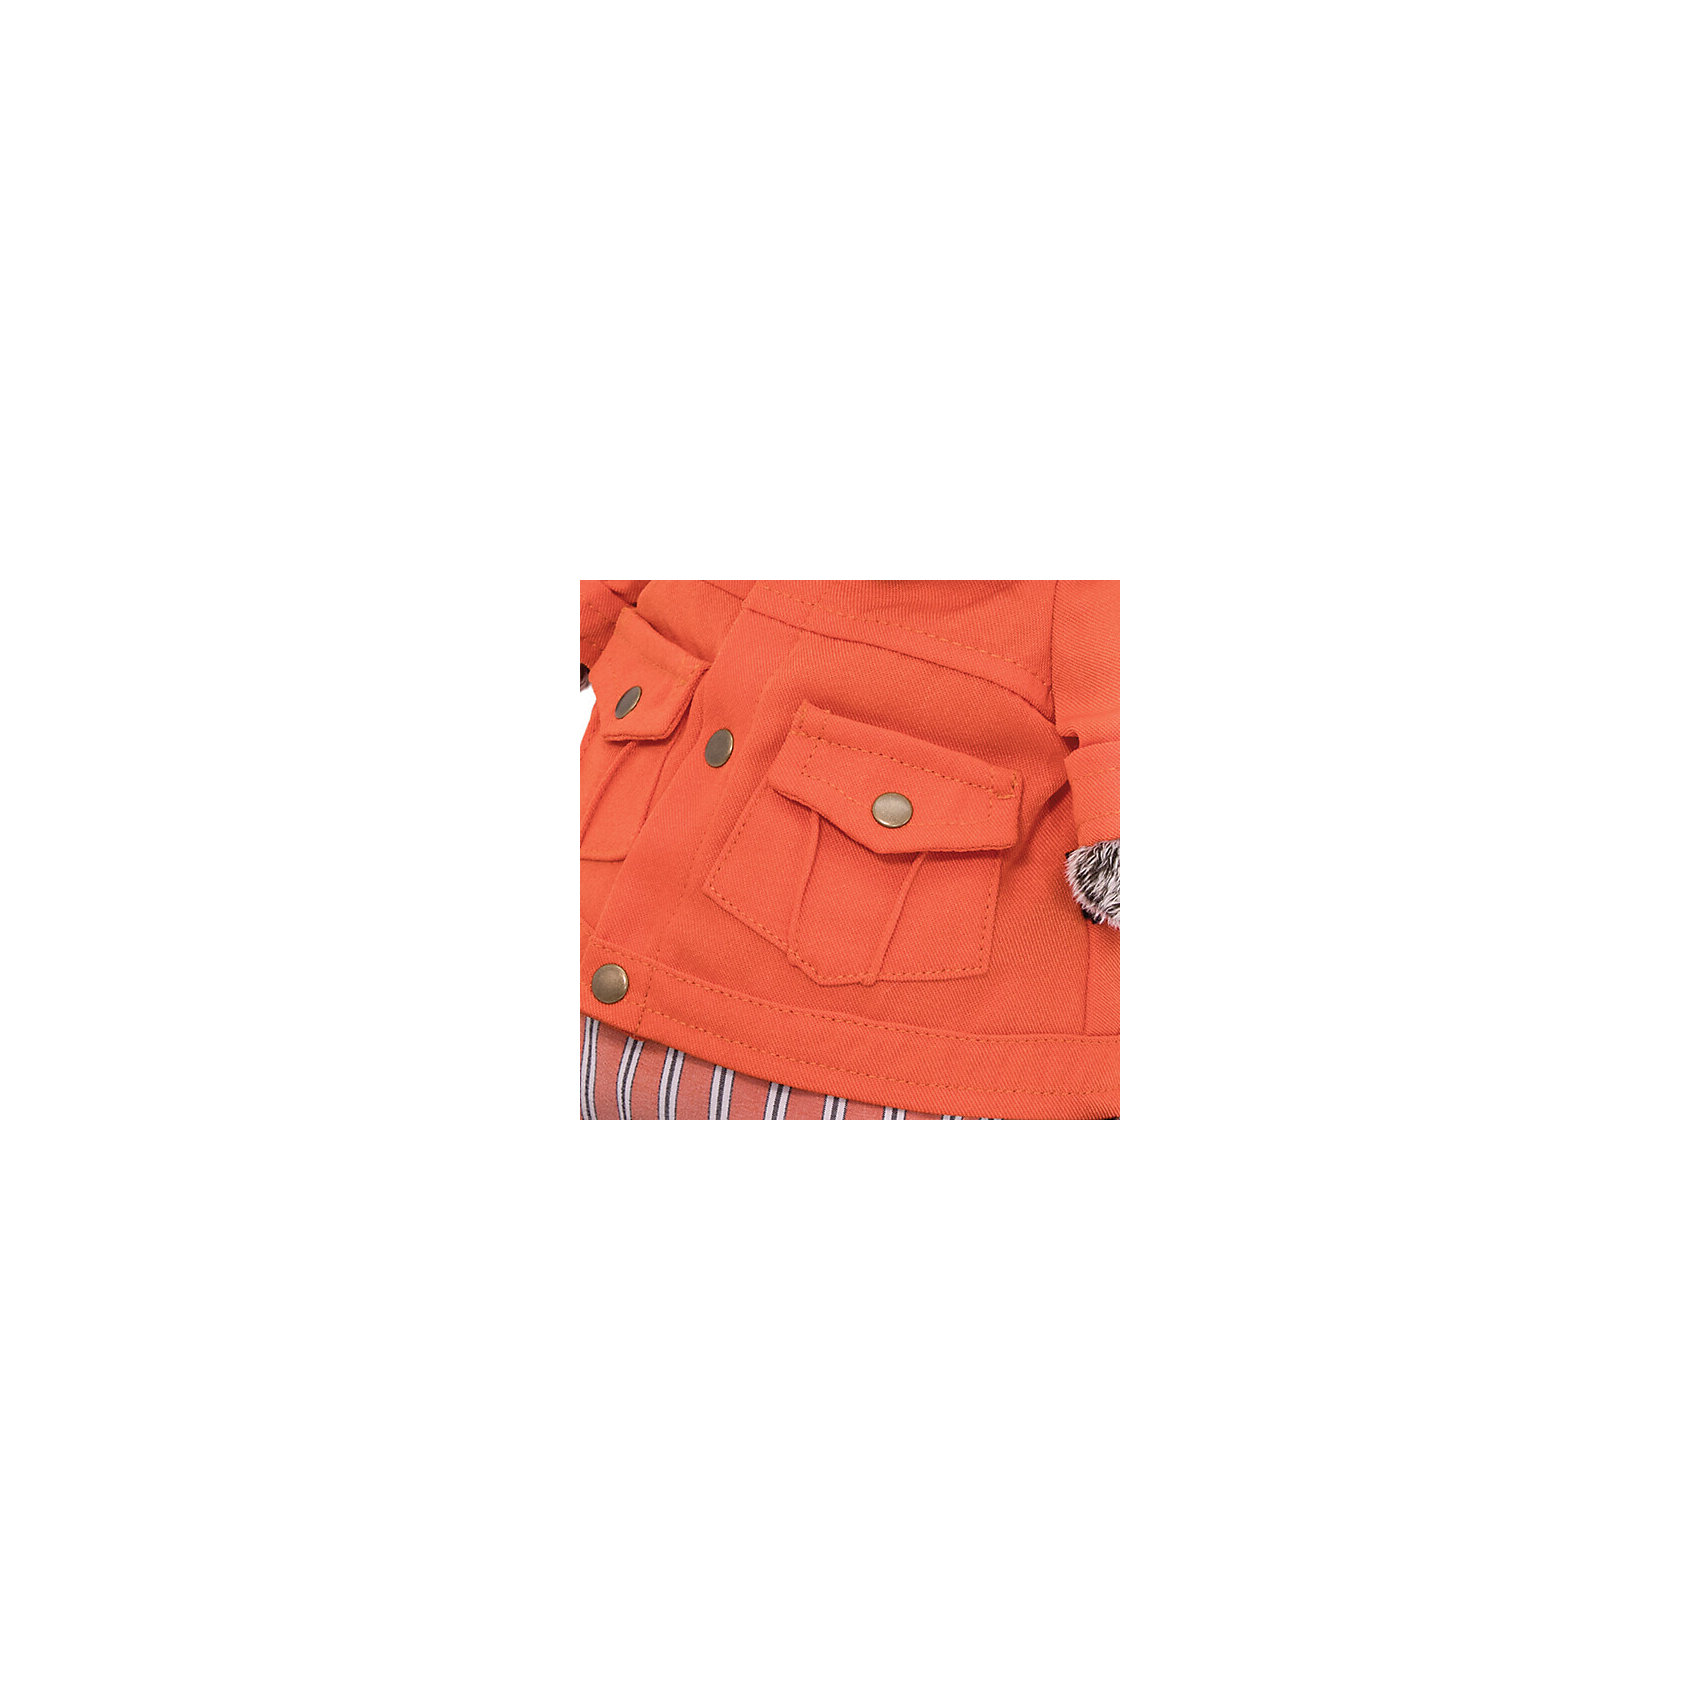 фото Мягкая игрушка budi basa кот басик в оранжевой куртке и штанах, 19 см